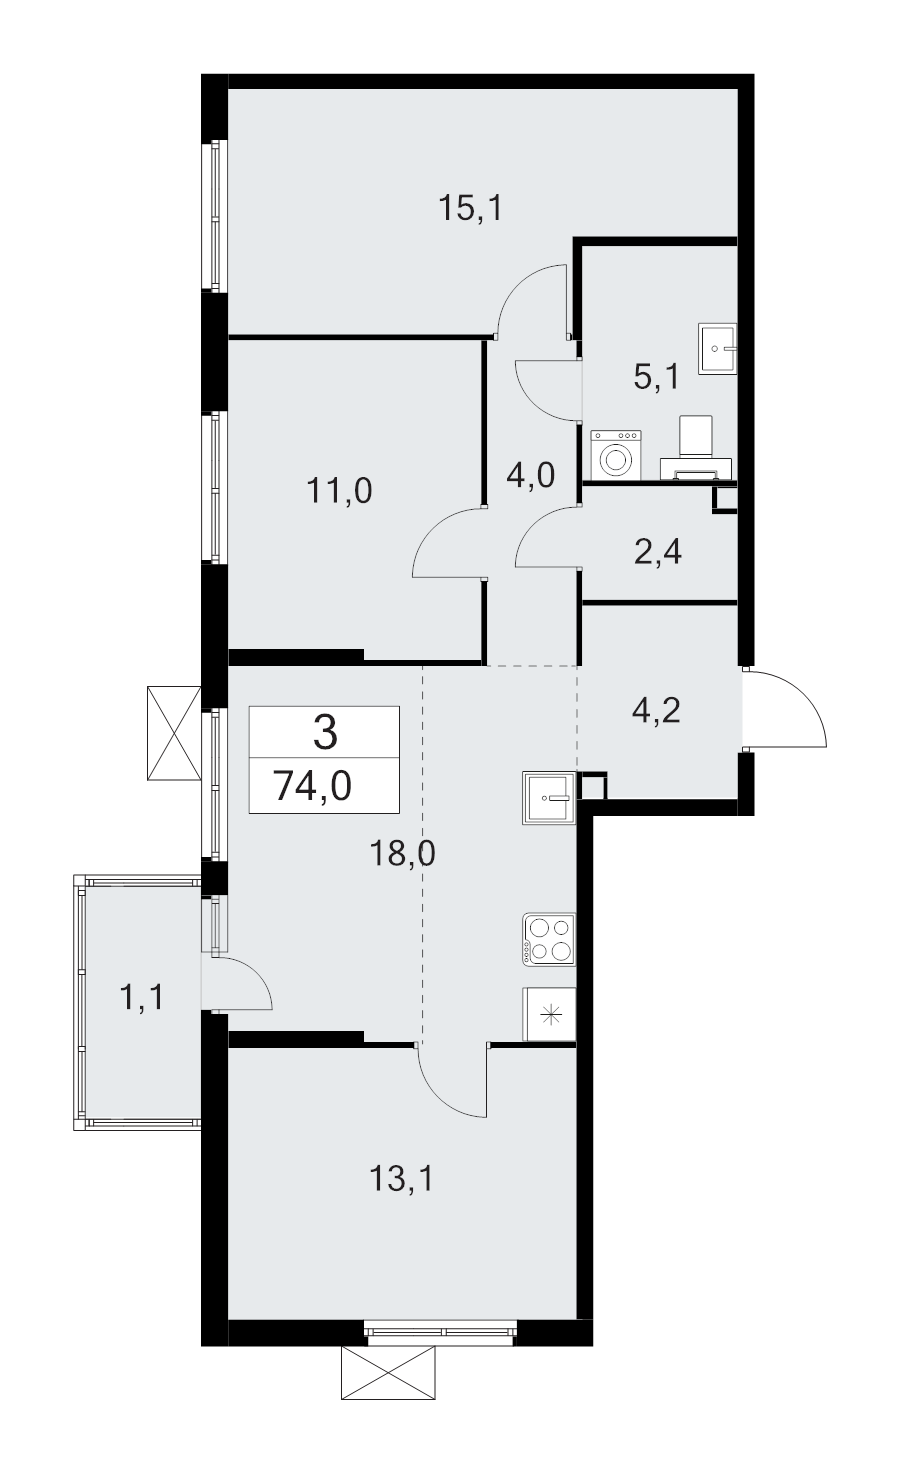 4-комнатная (Евро) квартира, 74 м² в ЖК "А101 Лаголово" - планировка, фото №1